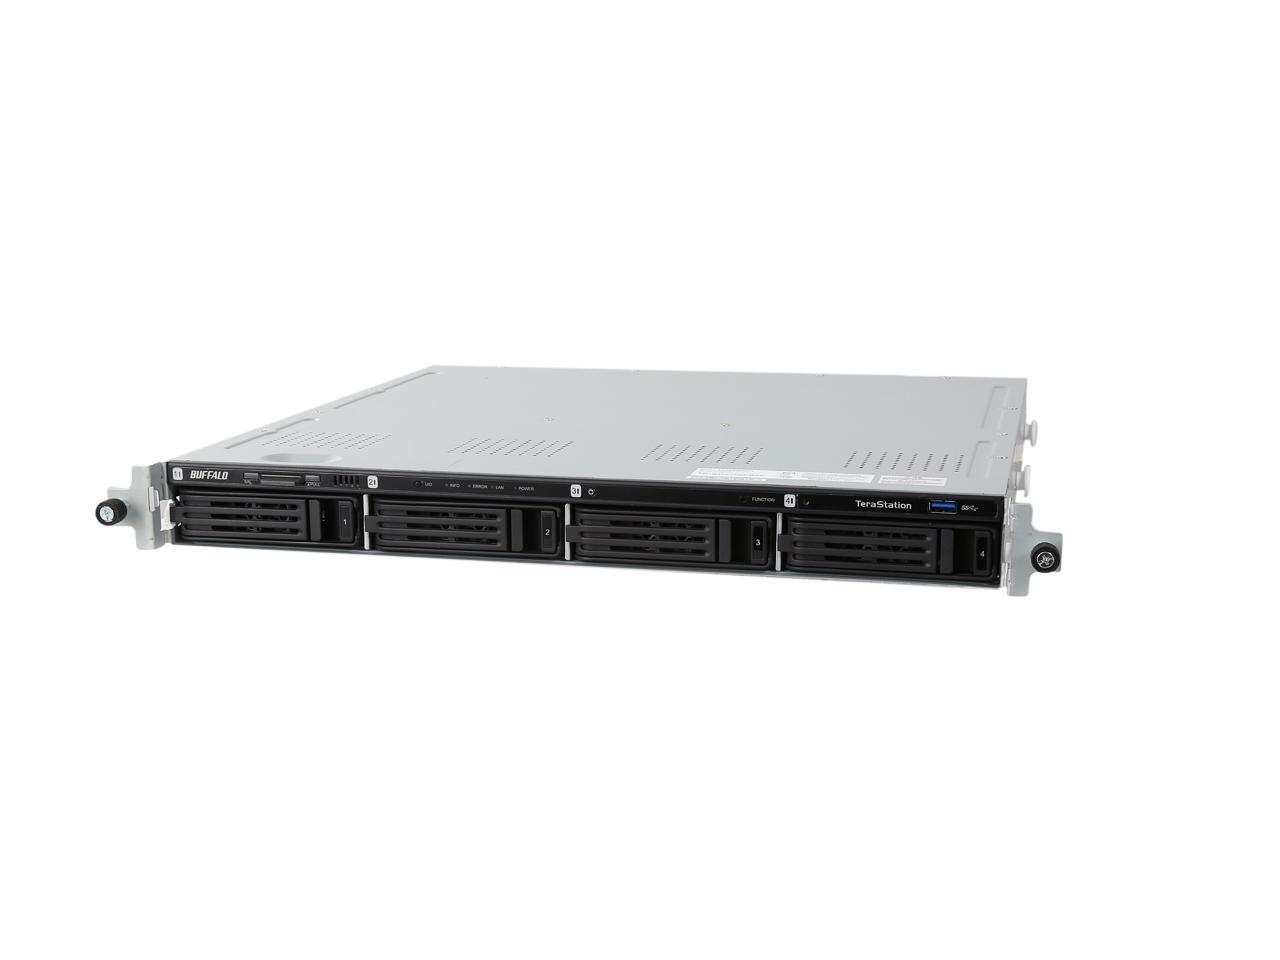 Bekostning At basen Buffalo TeraStation 1400R Rackmount 8 TB NAS Hard Drives Included  (TS1400R0804) - Newegg.com